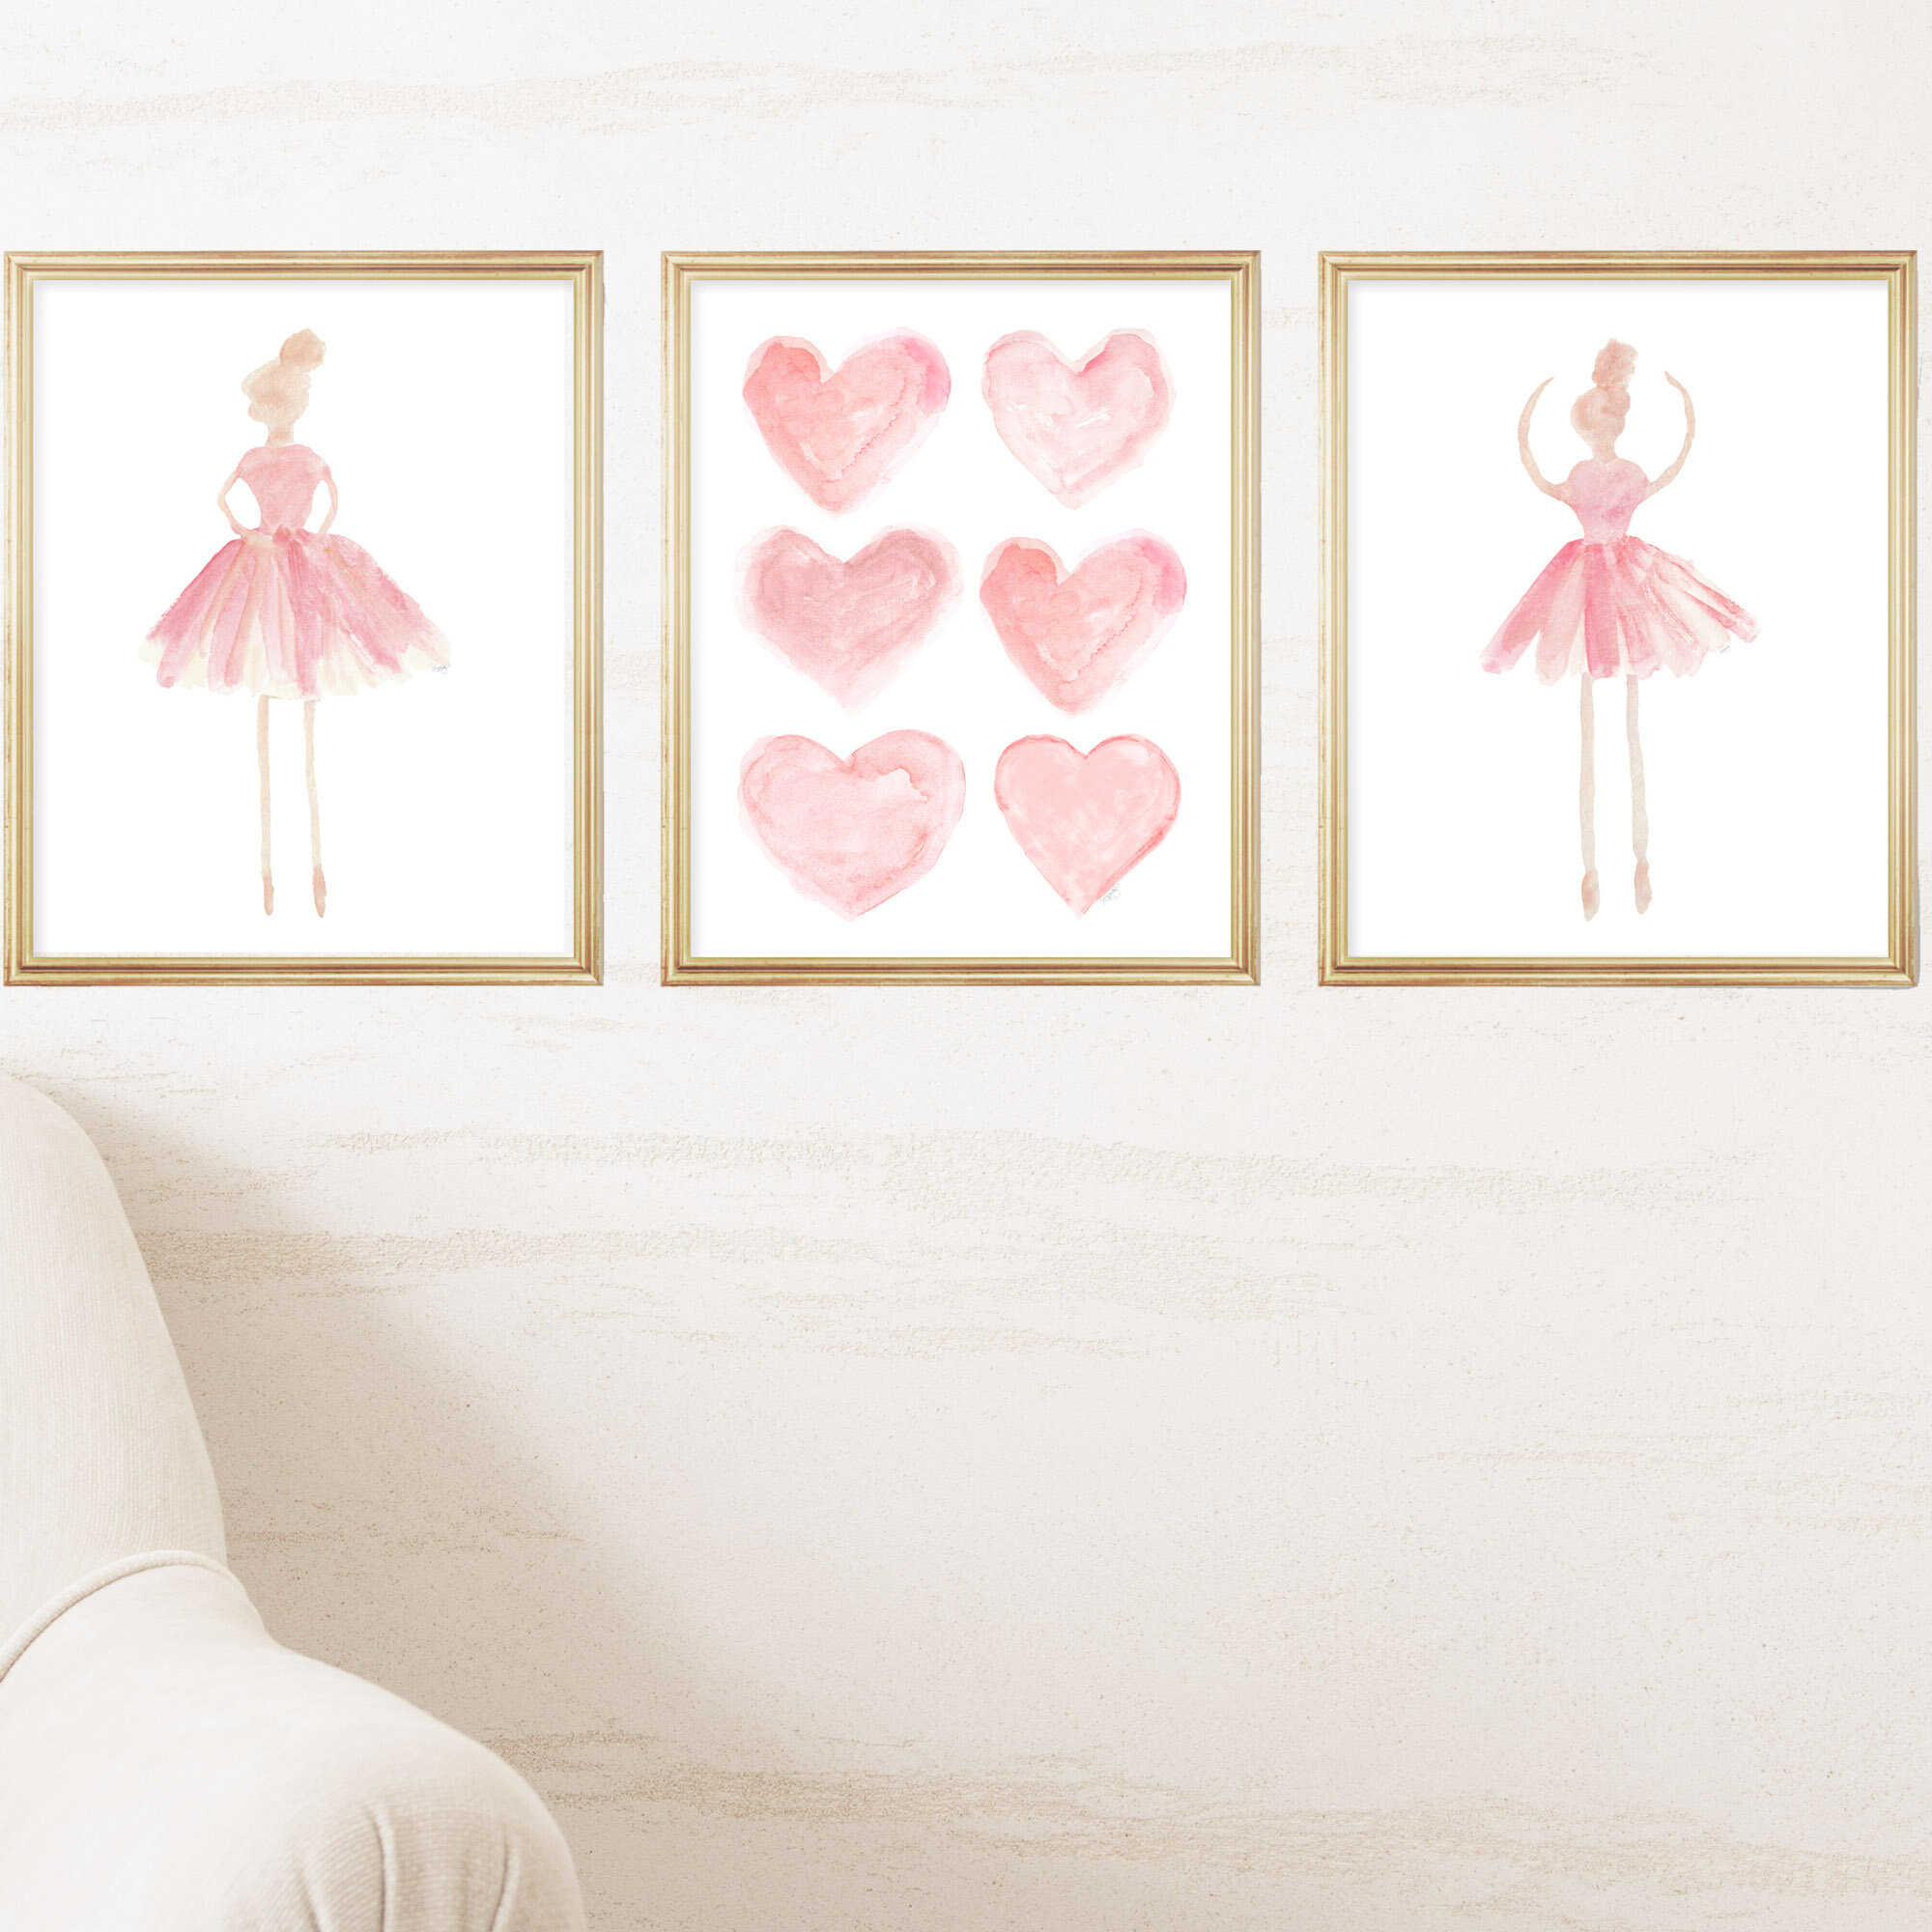 Ballerina Wall Art, Teen Girl Room Decor, Ballet Shoes, Girls Wall